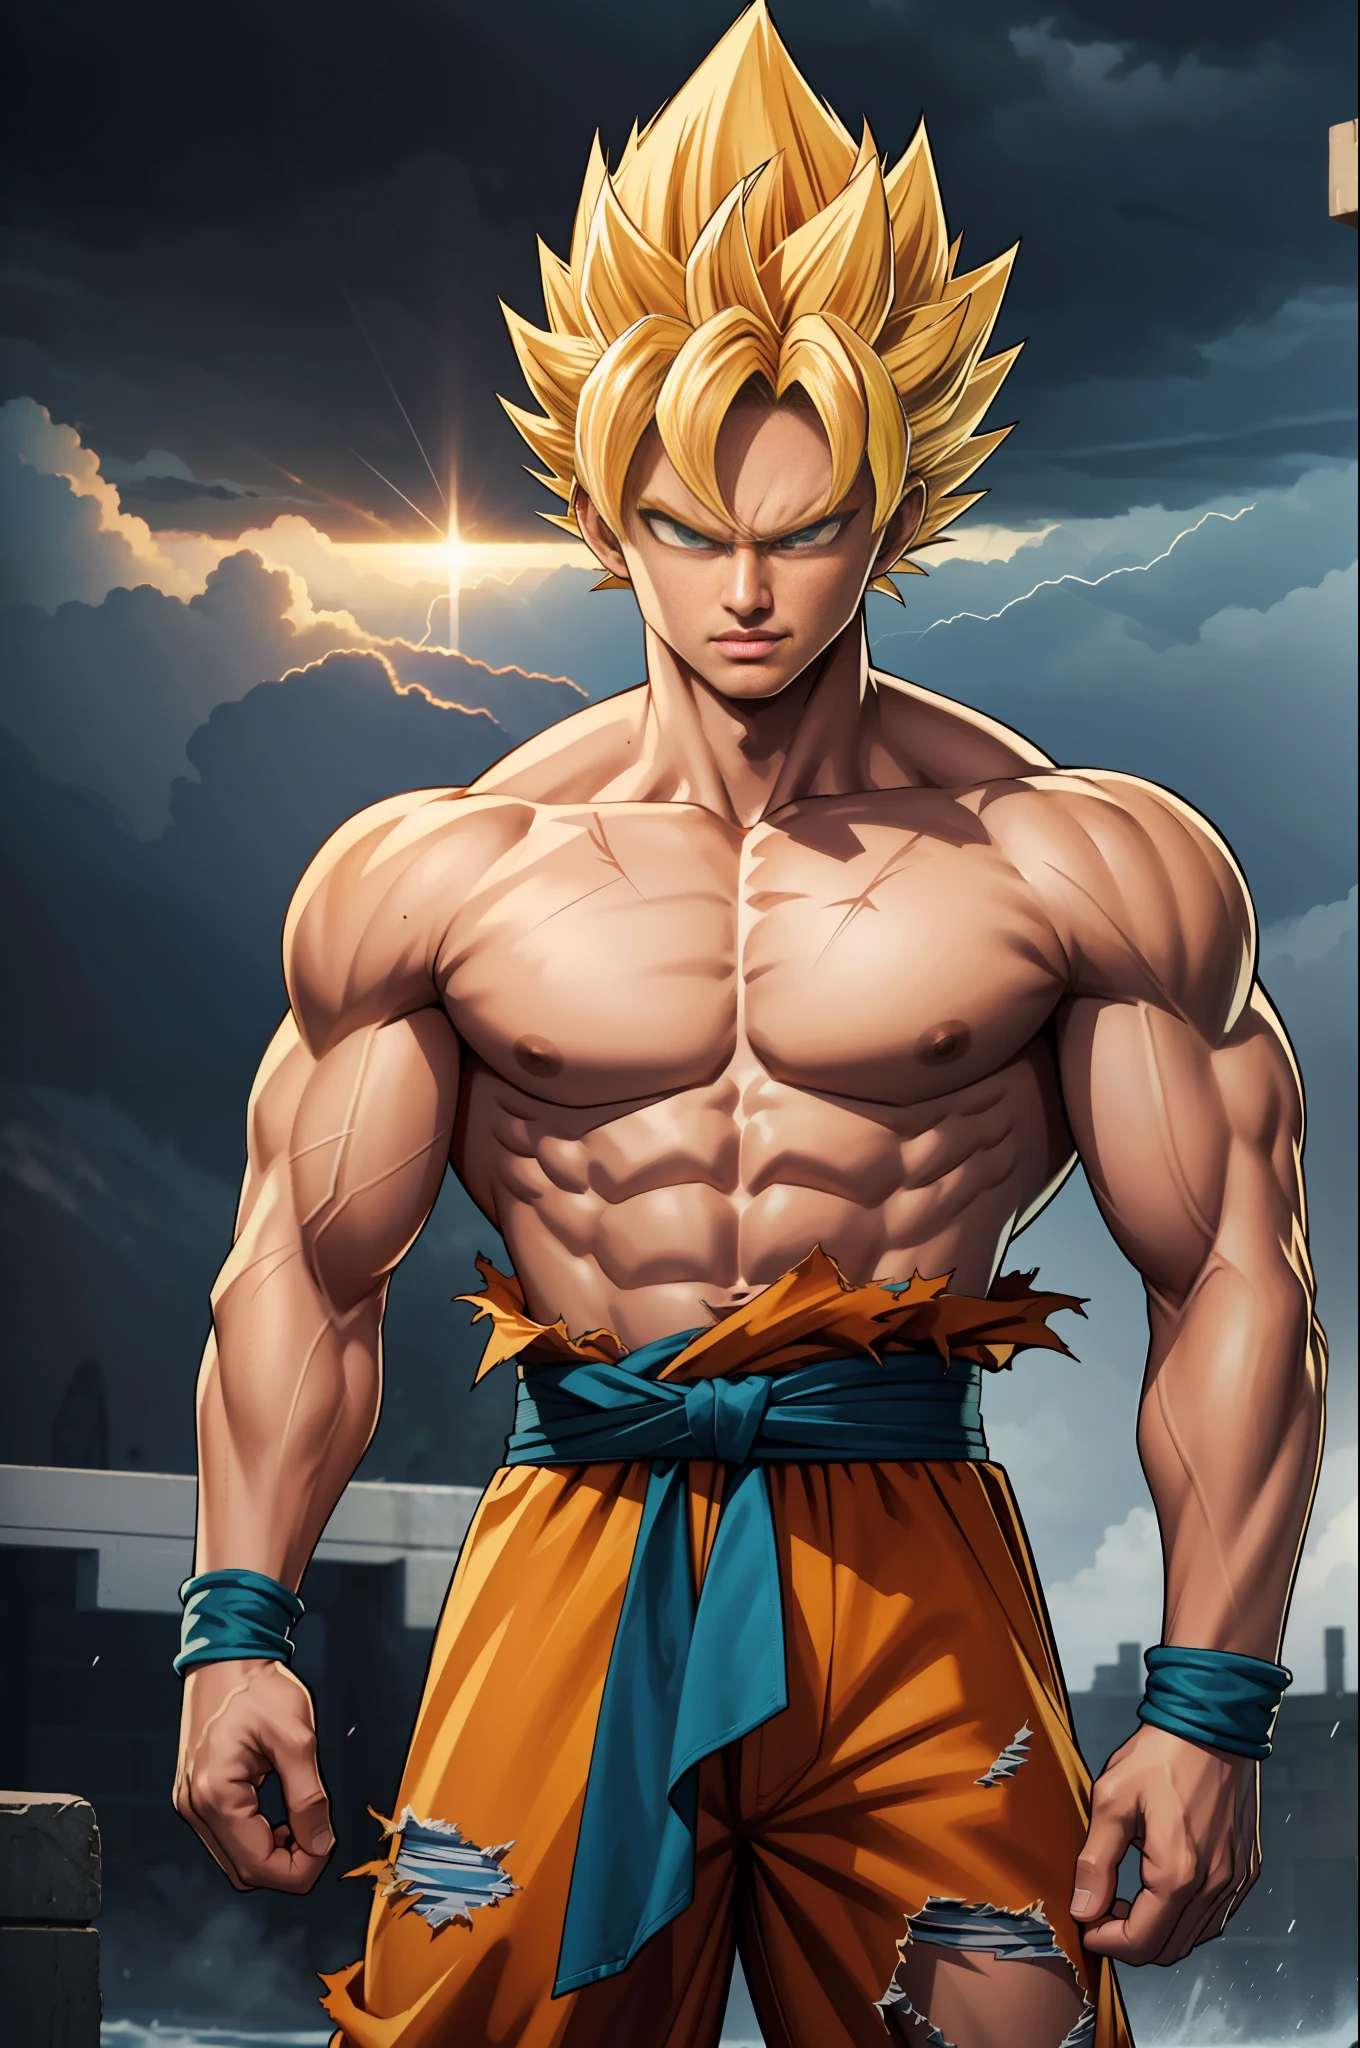 (chef-d&#39;œuvre, meilleure qualité), Détails complexes, 8k, Station artistique, Fond d&#39;écran, art officiel, art éclaboussant, tempête en arrière-plan, netteté, 1garçon, (photoréaliste:1.2) (bokeh) (meilleure qualité) (peau détaillée:1.3) (Détails complexes) (8k) (Yeux détaillés) (netteté) Son Goku, en colère, dégâts de combat, cheveux blond, blue Ceinture, clenched Dents, furieux, yeux verts, foyer masculin, musclé, musclé male, pectoraux, Ceinture, seulement, cheveux hérissés, super saiyan, super saiyan 1, Dents, homme seins nus, vêtements déchirés, bracelet,